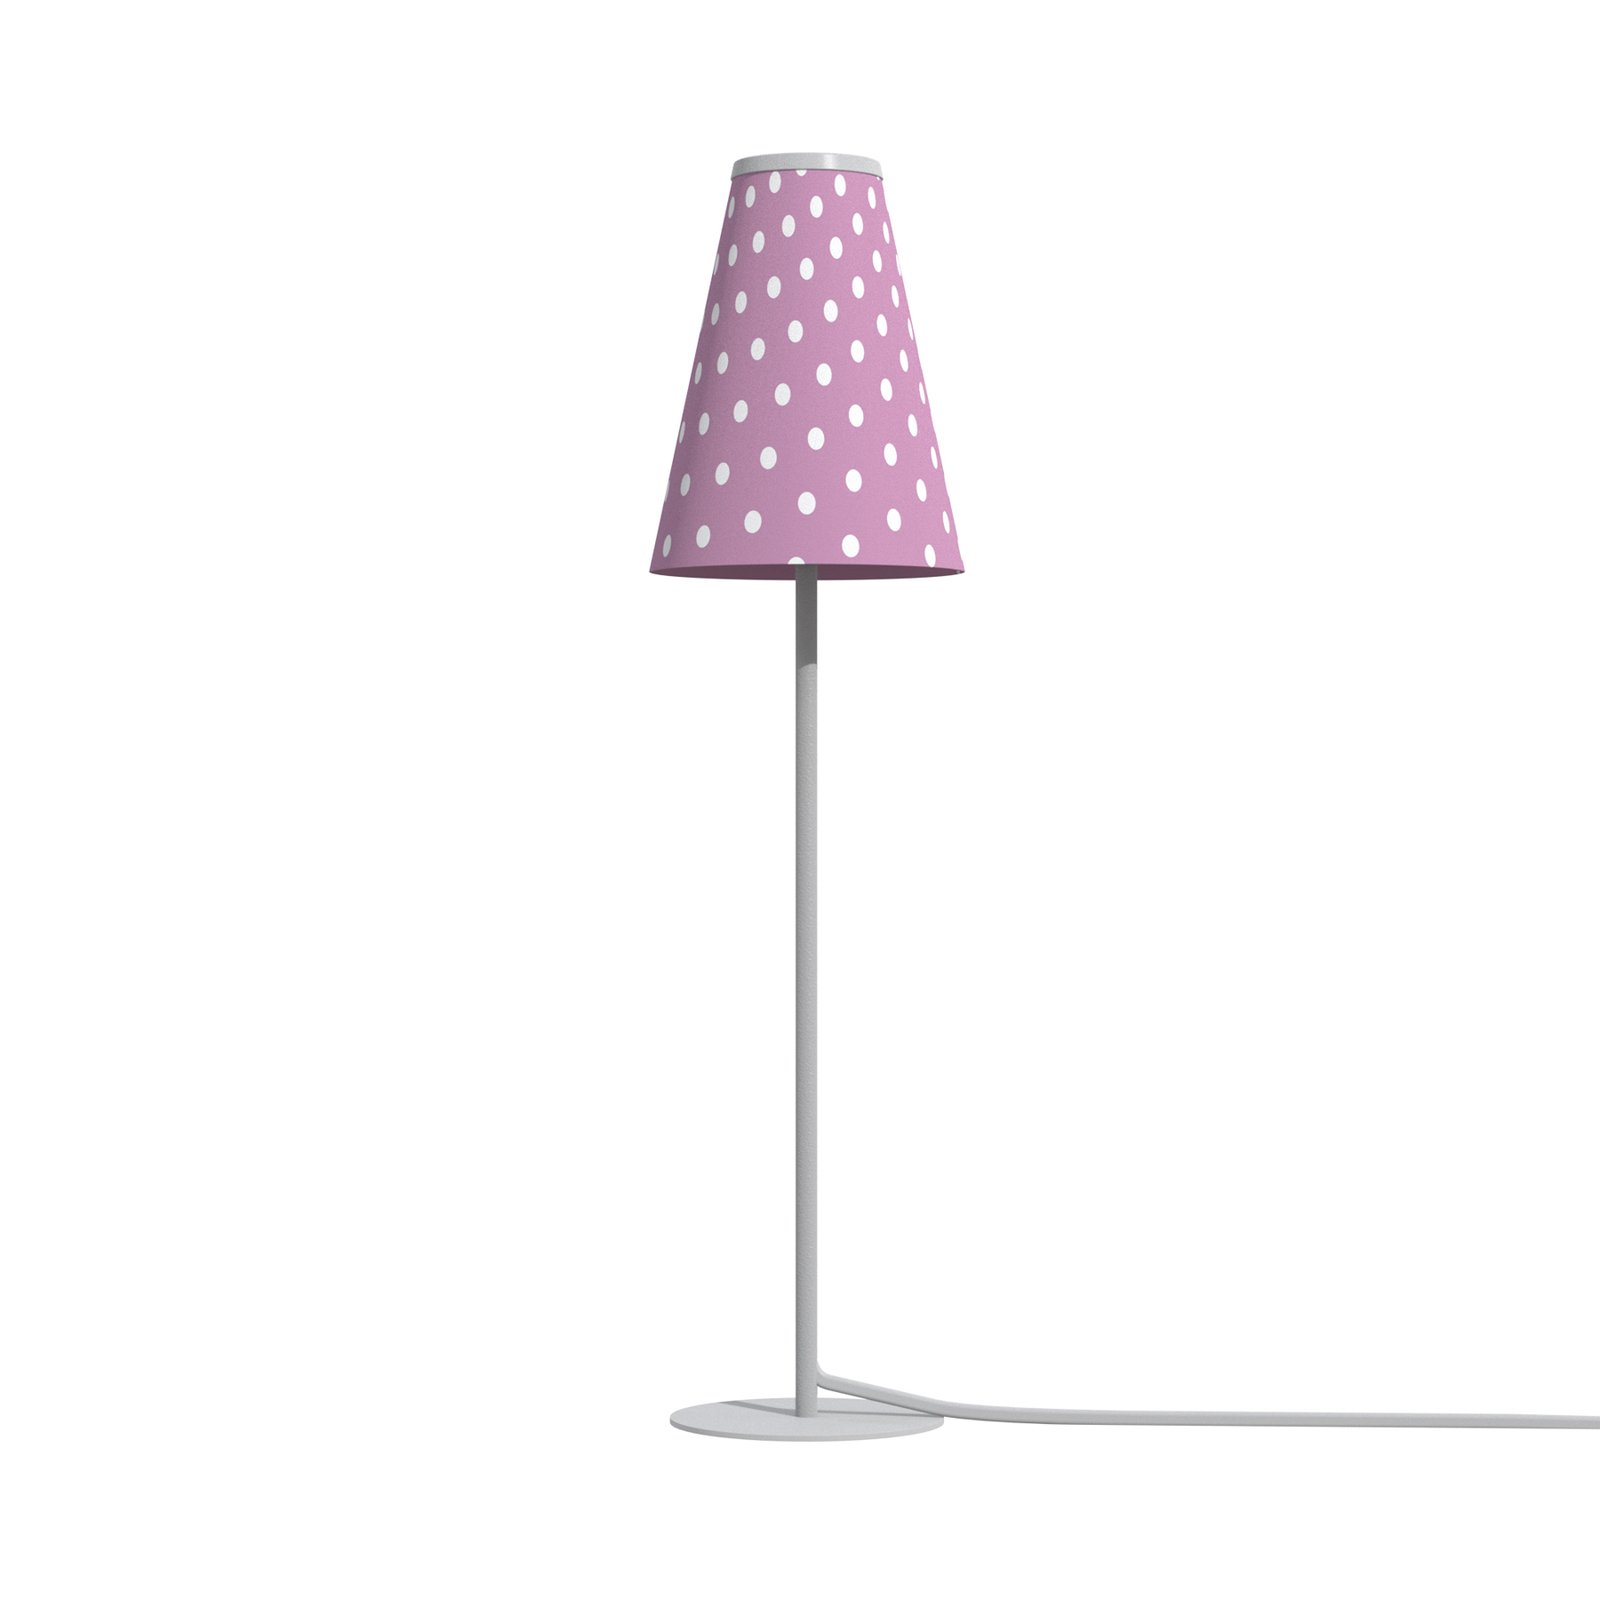 Bordslampa Trifle, rosa/vit med prickar